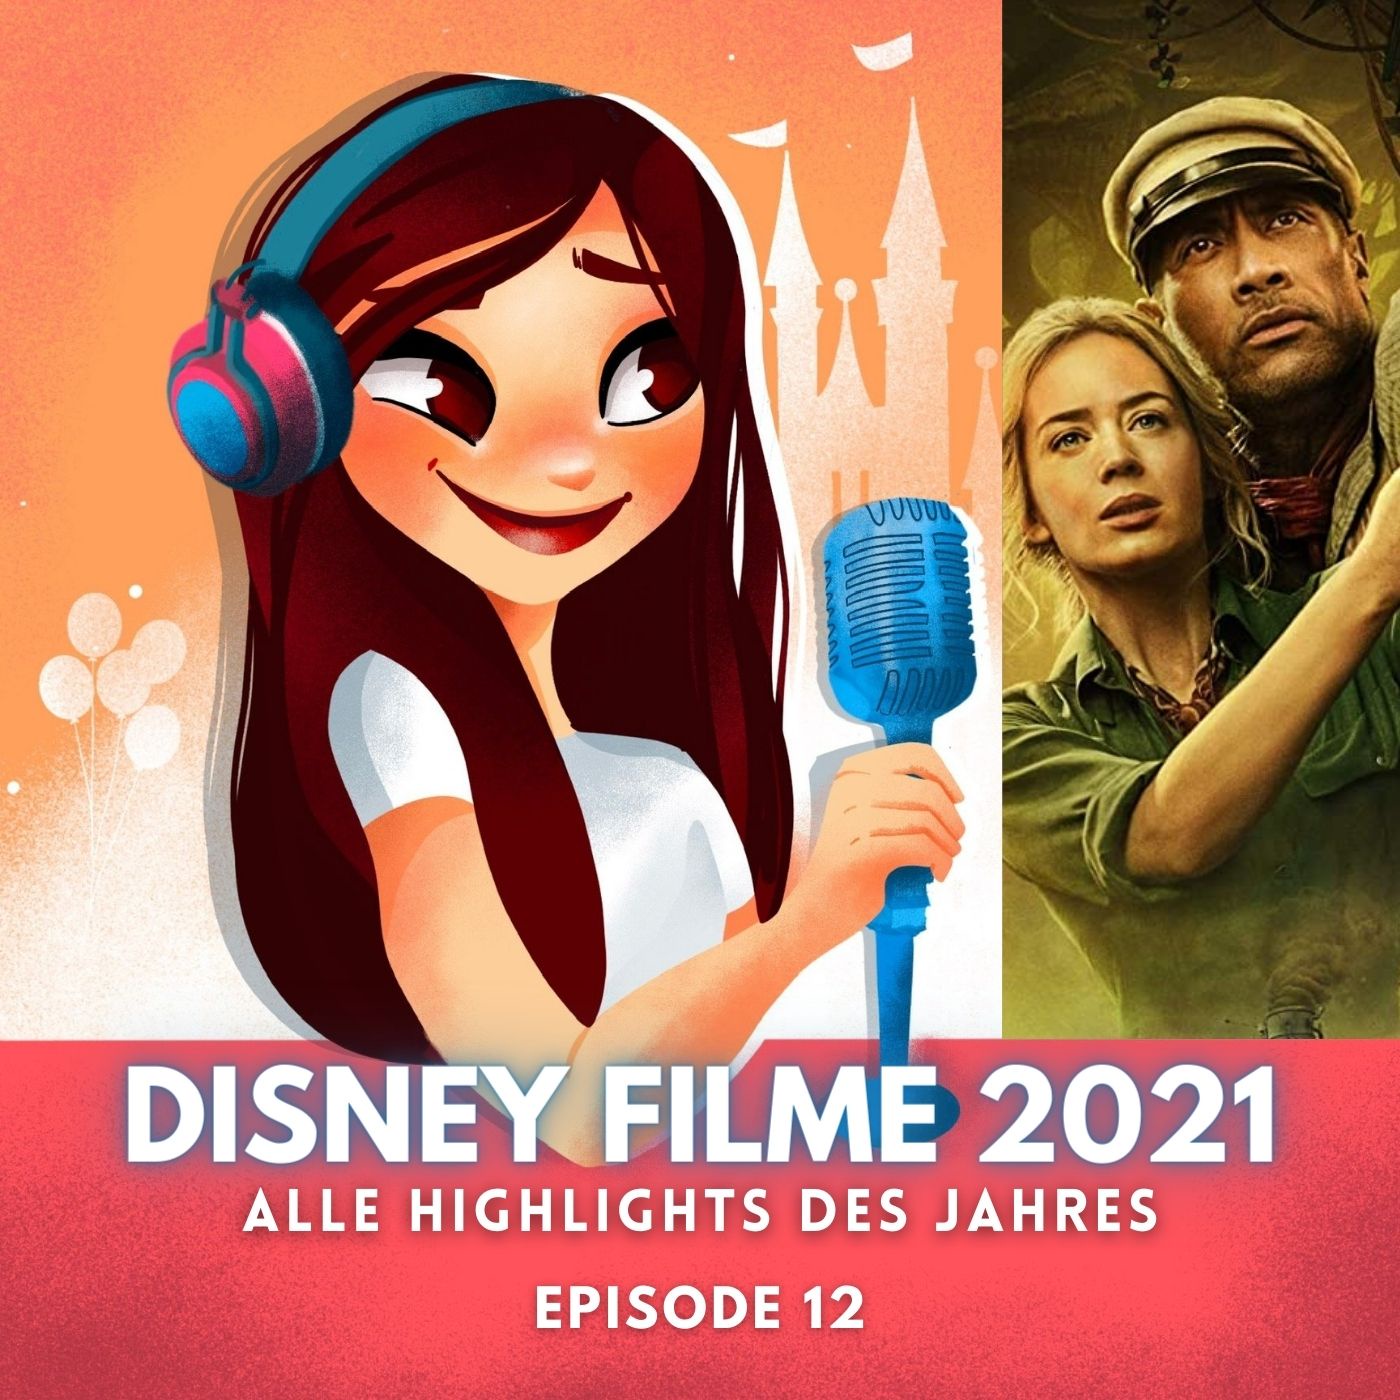 #12: Disney Filme 2021 | Das sind die kommenden Film-Highlights des Jahres